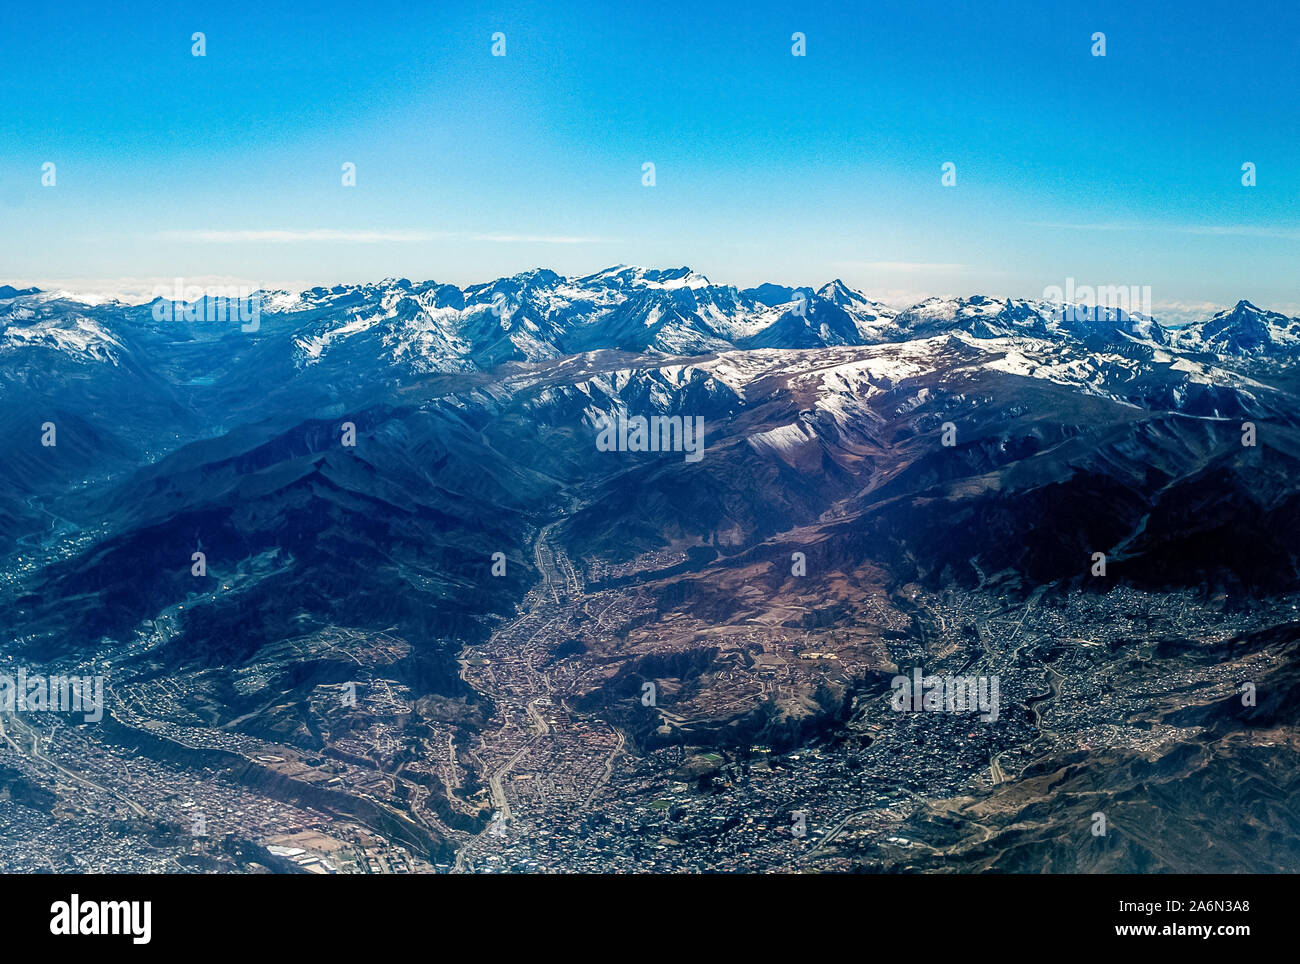 La Ville de La Paz, Bolivie Vu du ciel avec des pics des montagnes enneigées de la Cordillère des Andes Banque D'Images